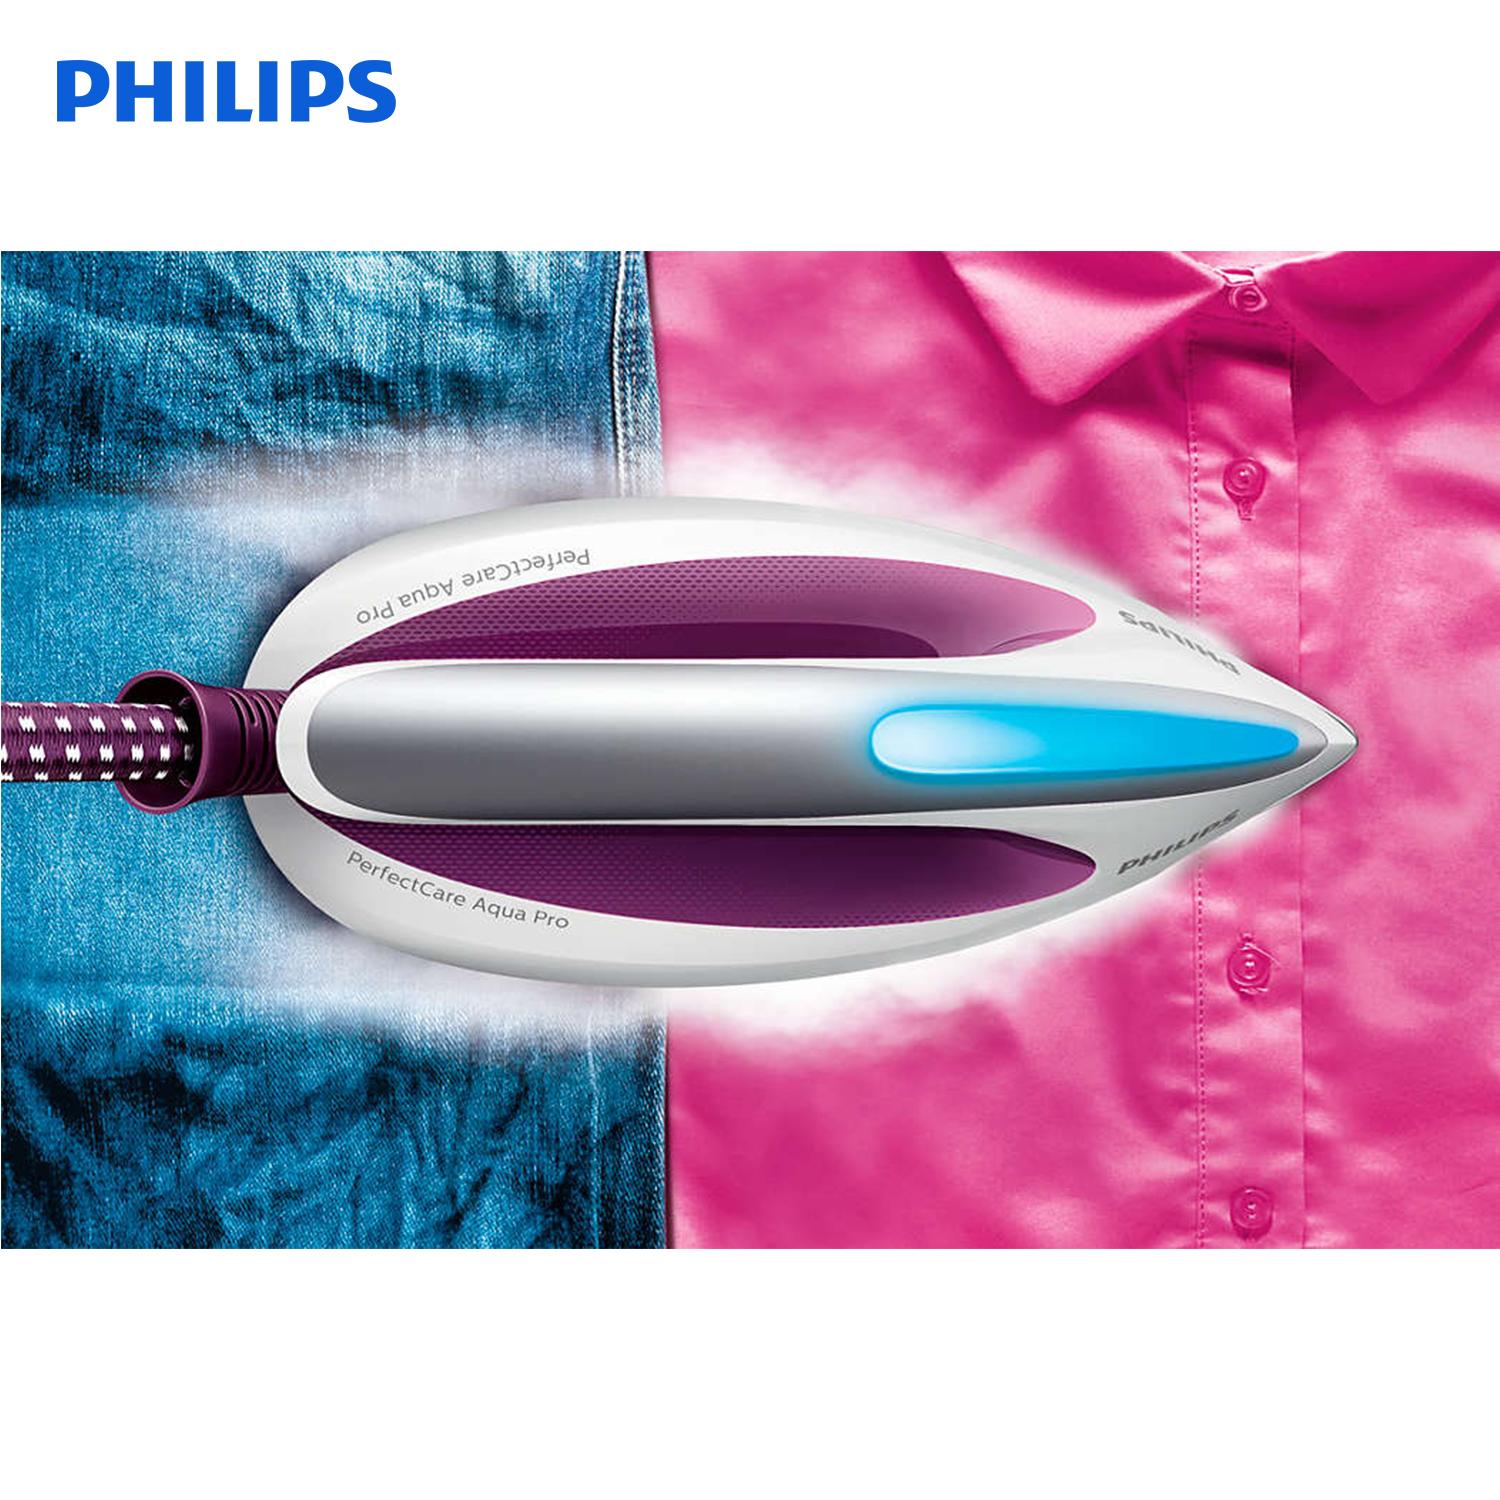 Philips เตารีดไอน้ำ PerfectCare Aqua ขนาด 6.5 บาร์ กำลังไฟ 2400 วัตต์ พร้อมระบบ OptimalTEMP รุ่น GC9315 (แถมฟรี โต๊ะรีดผ้าขนาดใหญ่ + เครื่องรีดไอน้ำ รุ่น DT7000)